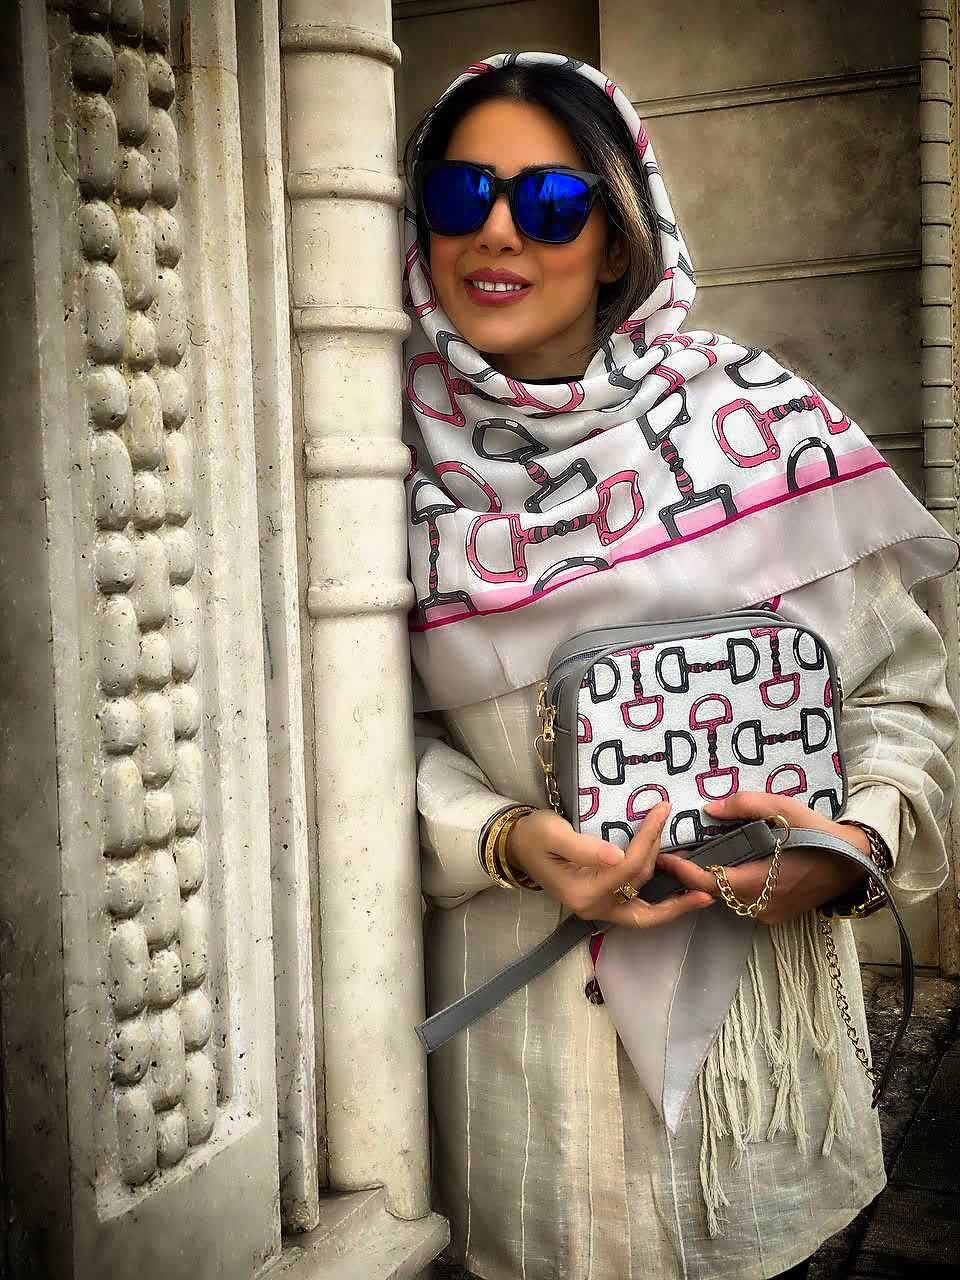 ست کیف و روسری زنانه طرح نلین رنگ طوسی صورتی با کیف کوچک کیفیت عالی با ارسال رایگان کد mo429